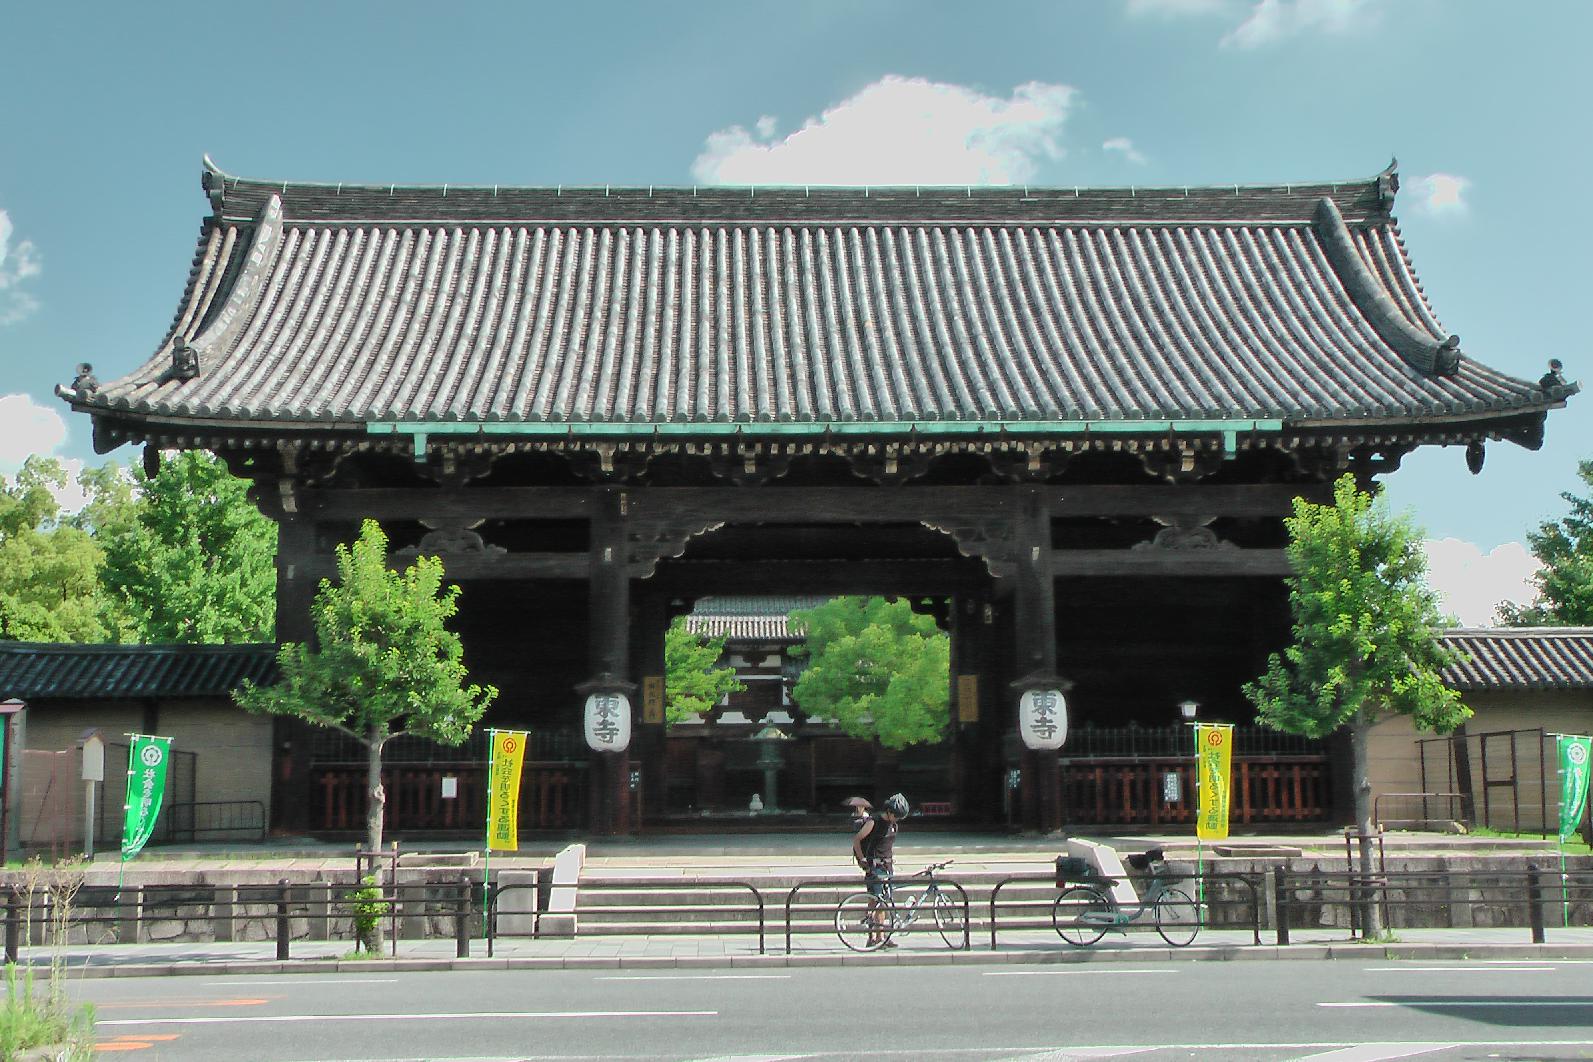 Entrance to the Kyō-ō Gokoku-ji Temple